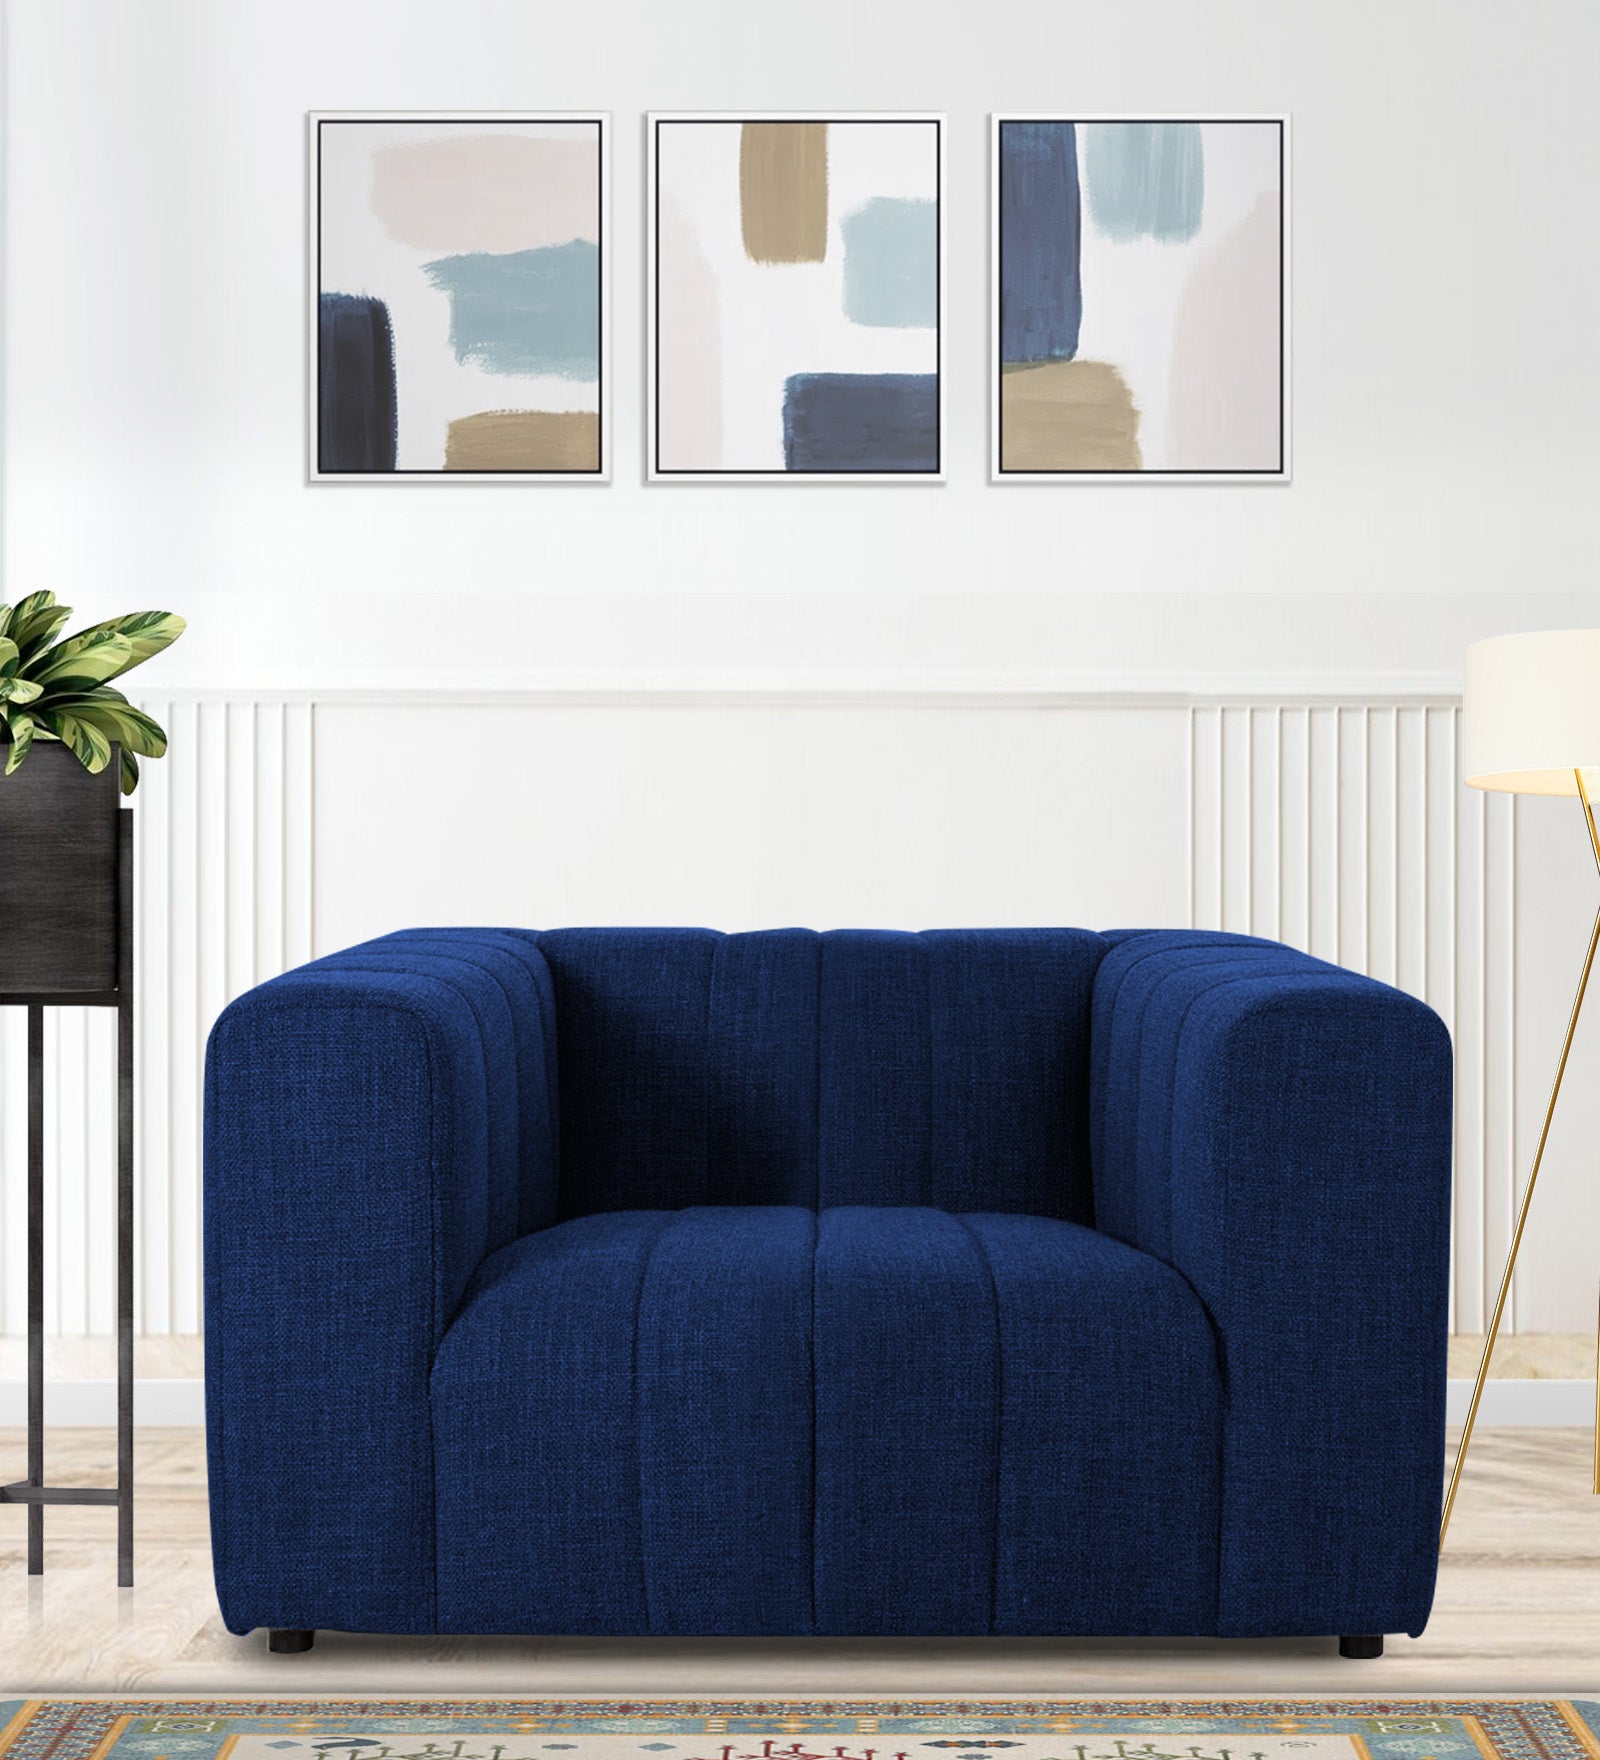 Lara Fabric 1 Seater Sofa in Royal Blue Colour